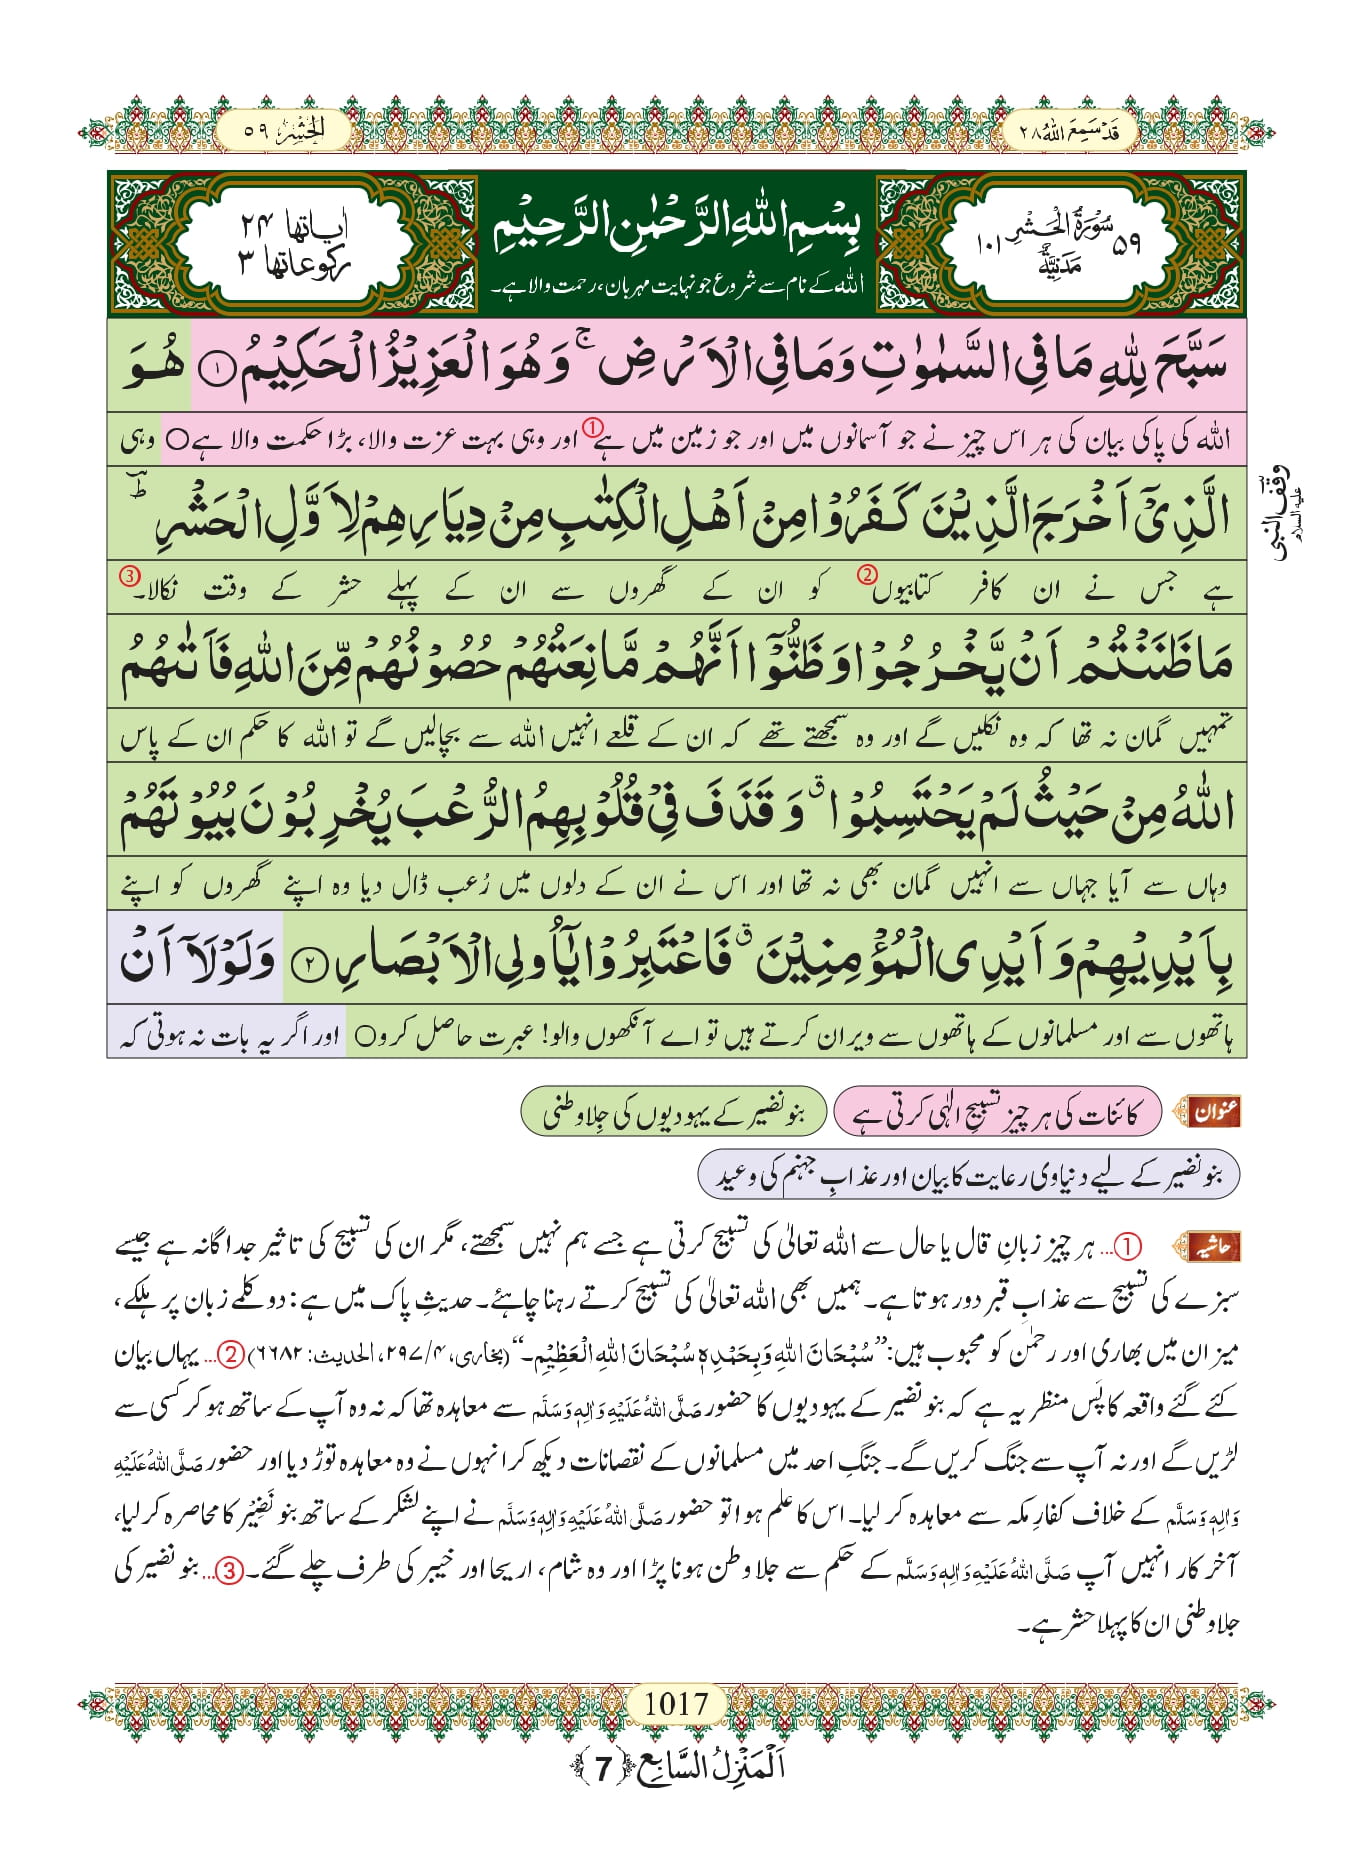 last three ayats of surah hashr